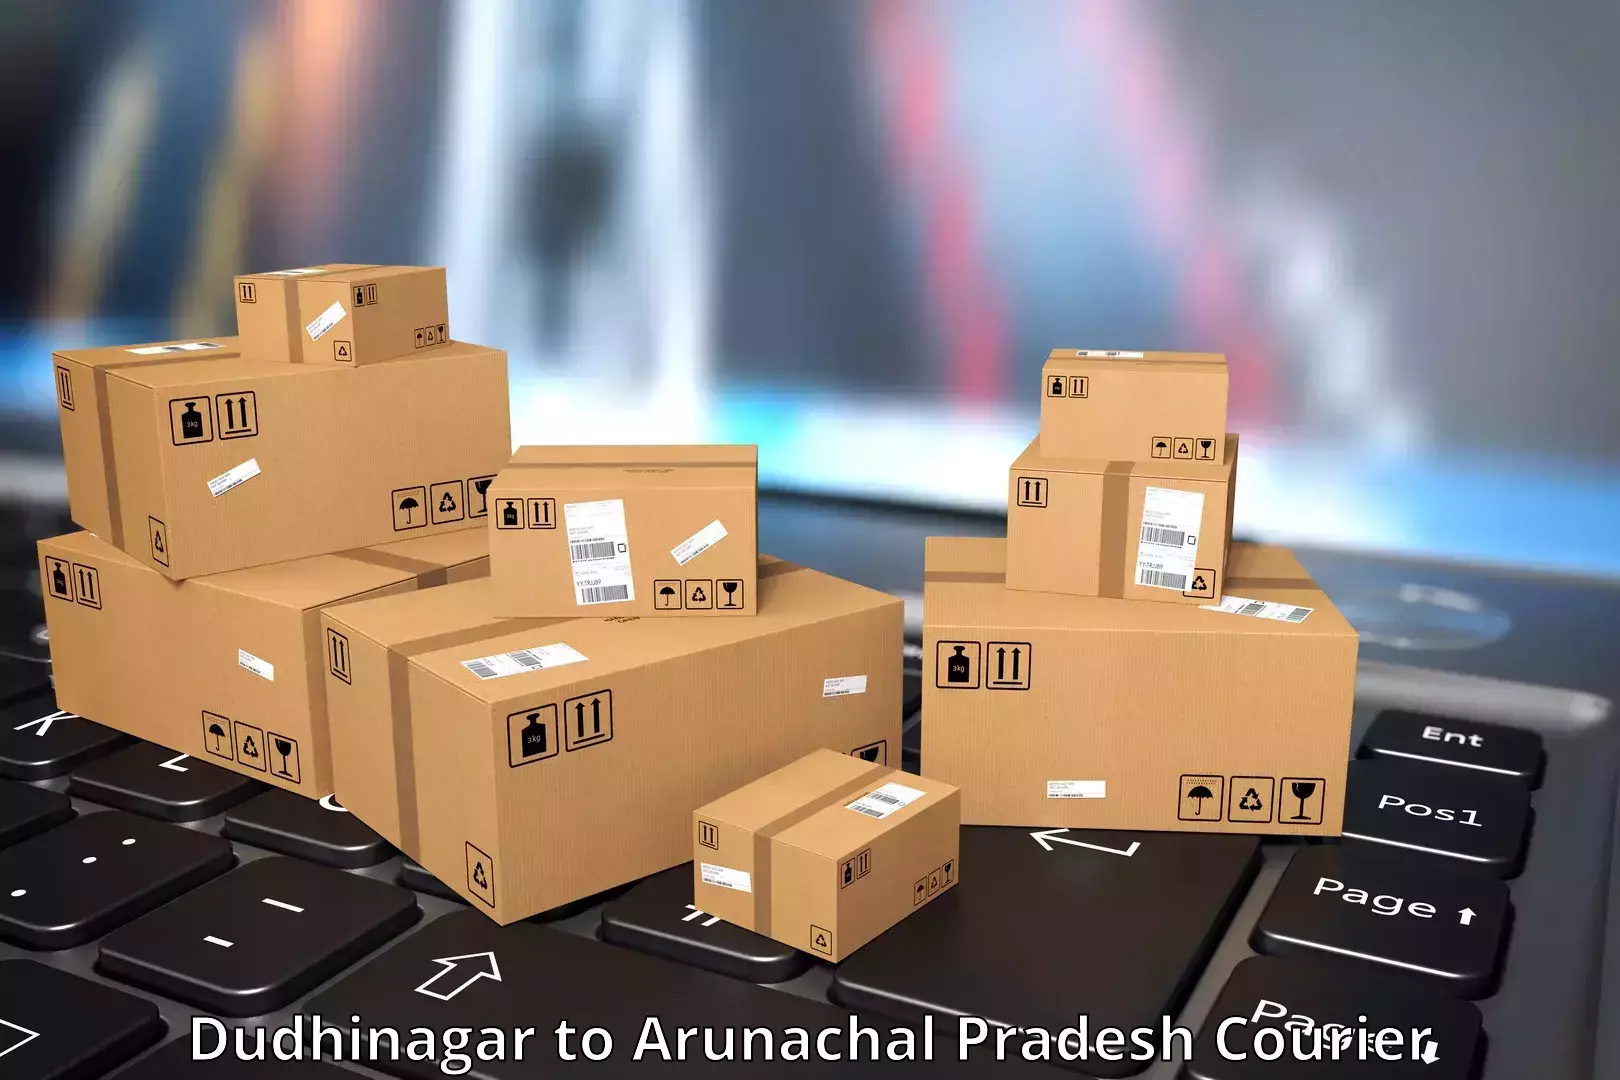 Express package handling Dudhinagar to Tirap